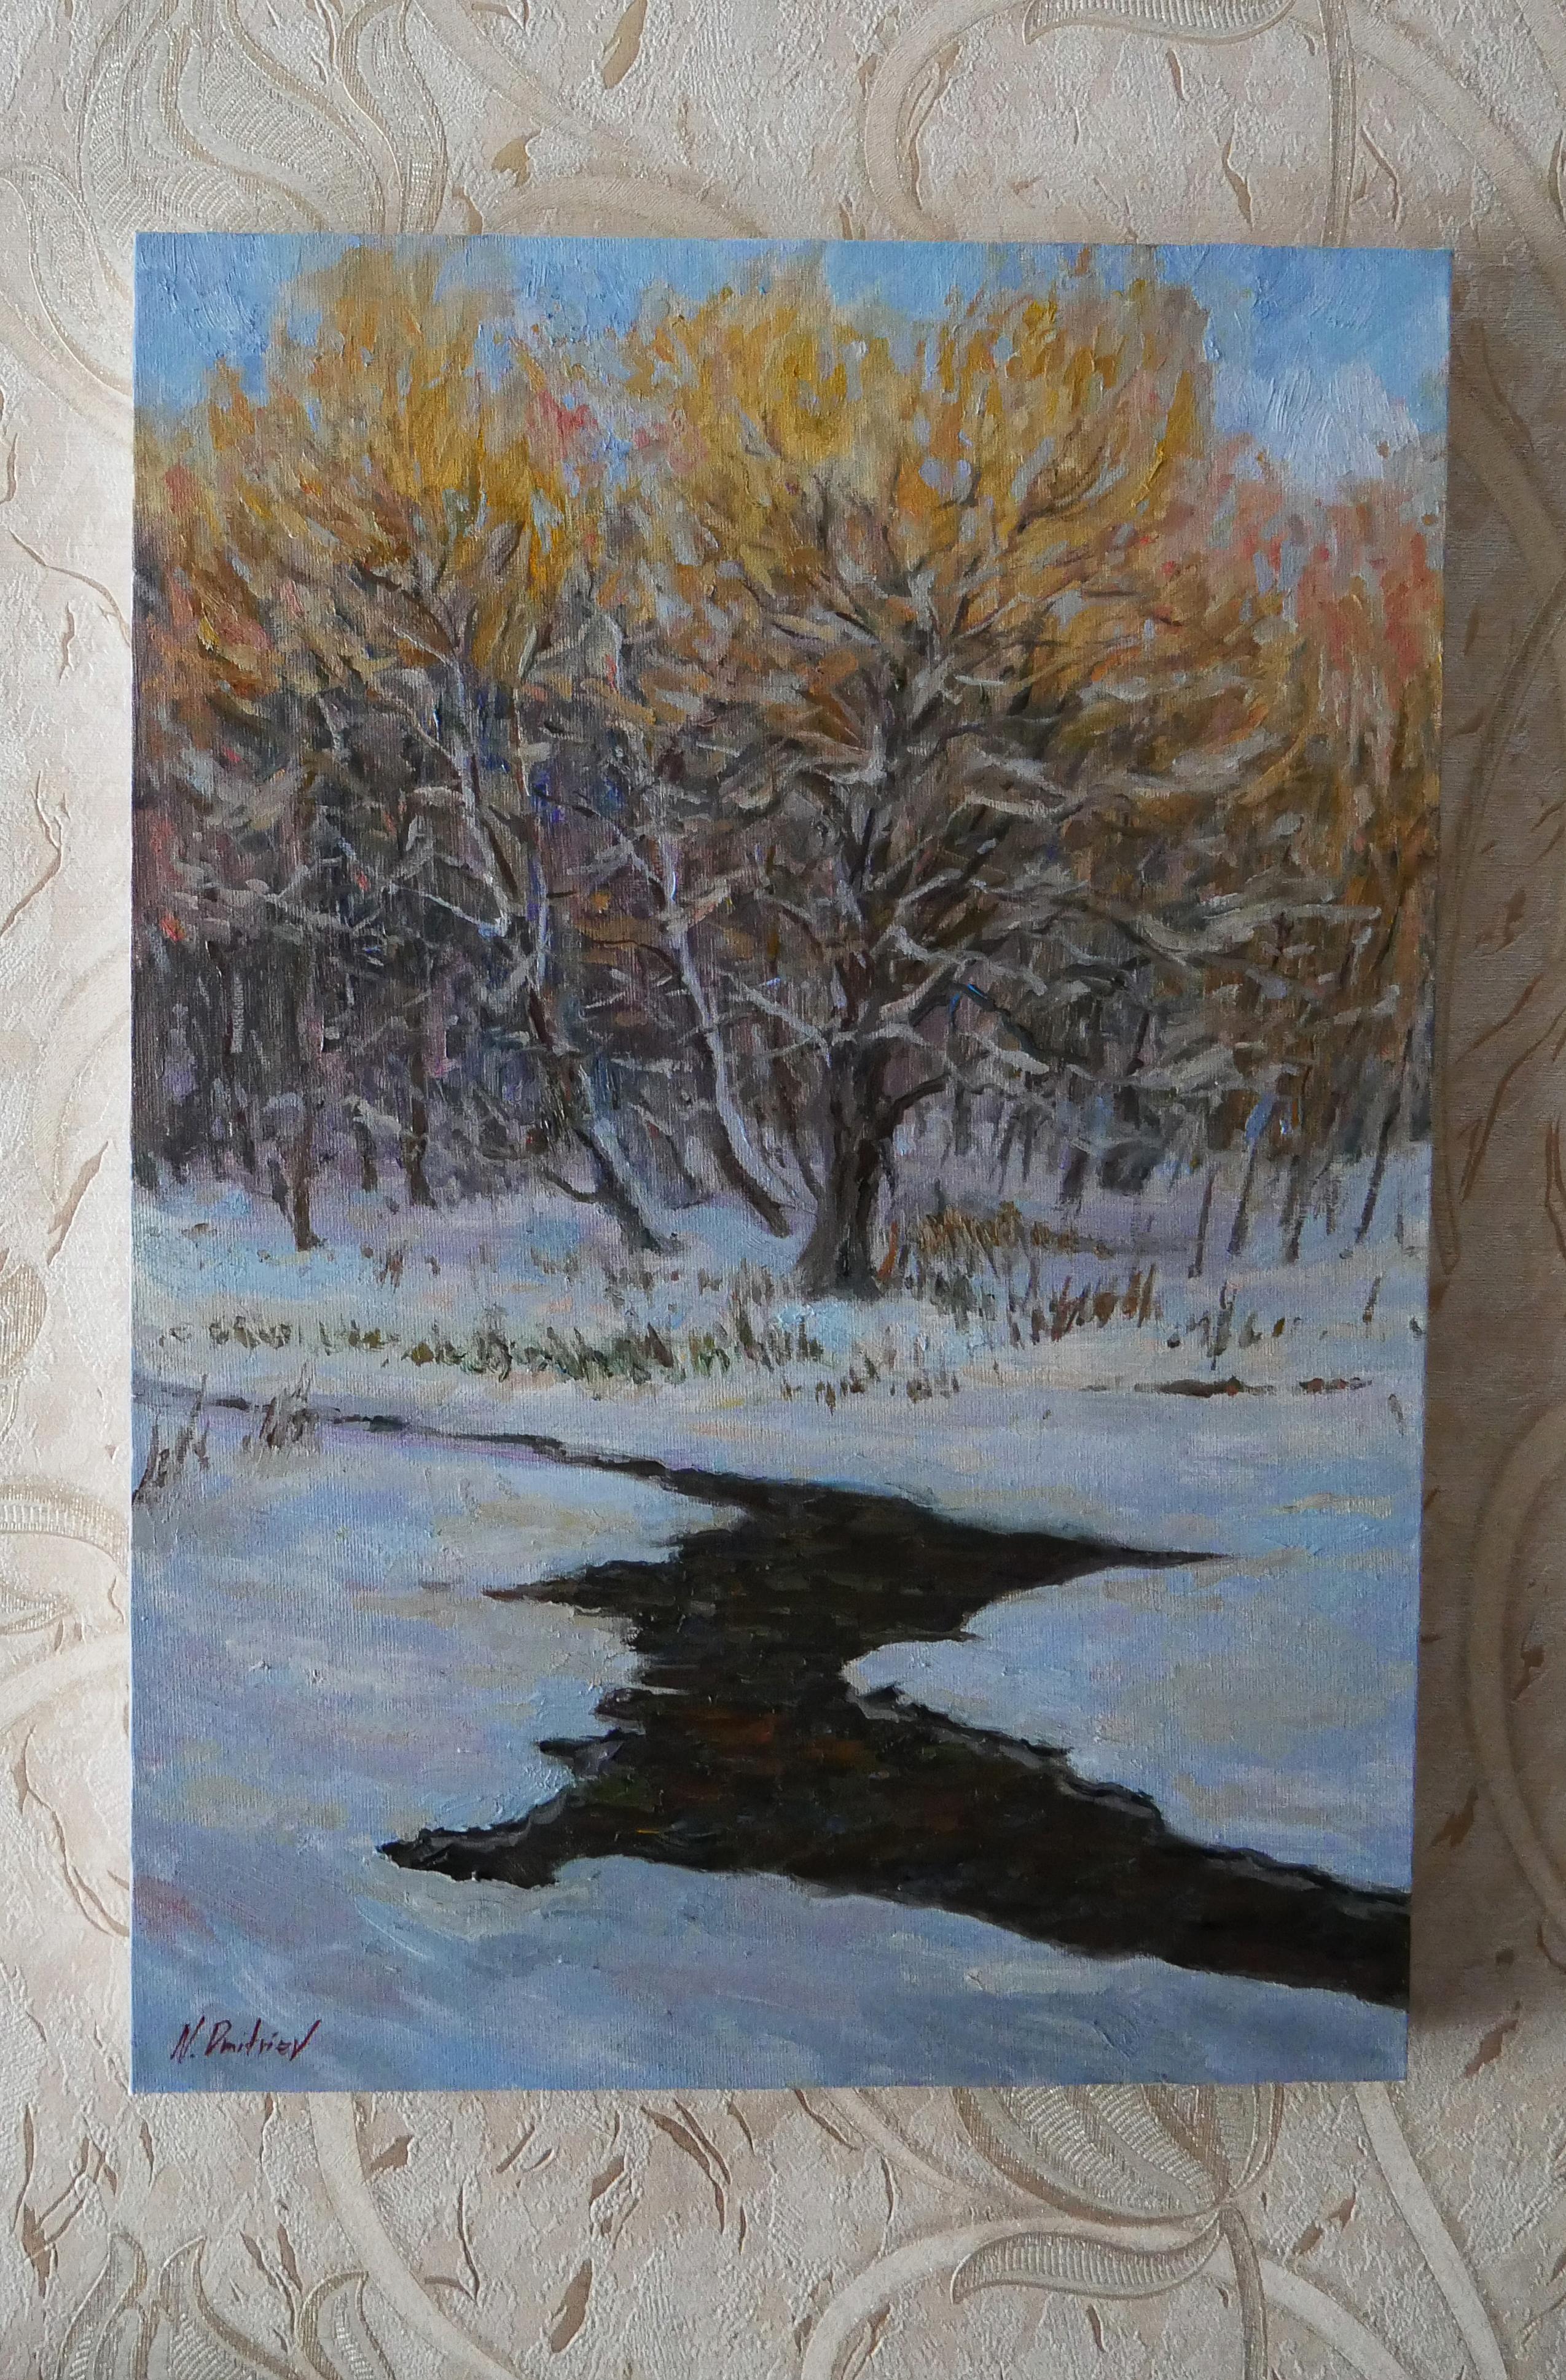 Der dunkle Fleck des Flusses sieht vor dem Hintergrund des hellen Schnees wunderschön aus. Sonnendurchflutete Baumkronen mit warmem Sonnenlicht und die blauen Farbtöne des Schnees schaffen die Atmosphäre eines Winterabends.

Das Gemälde stammt vom